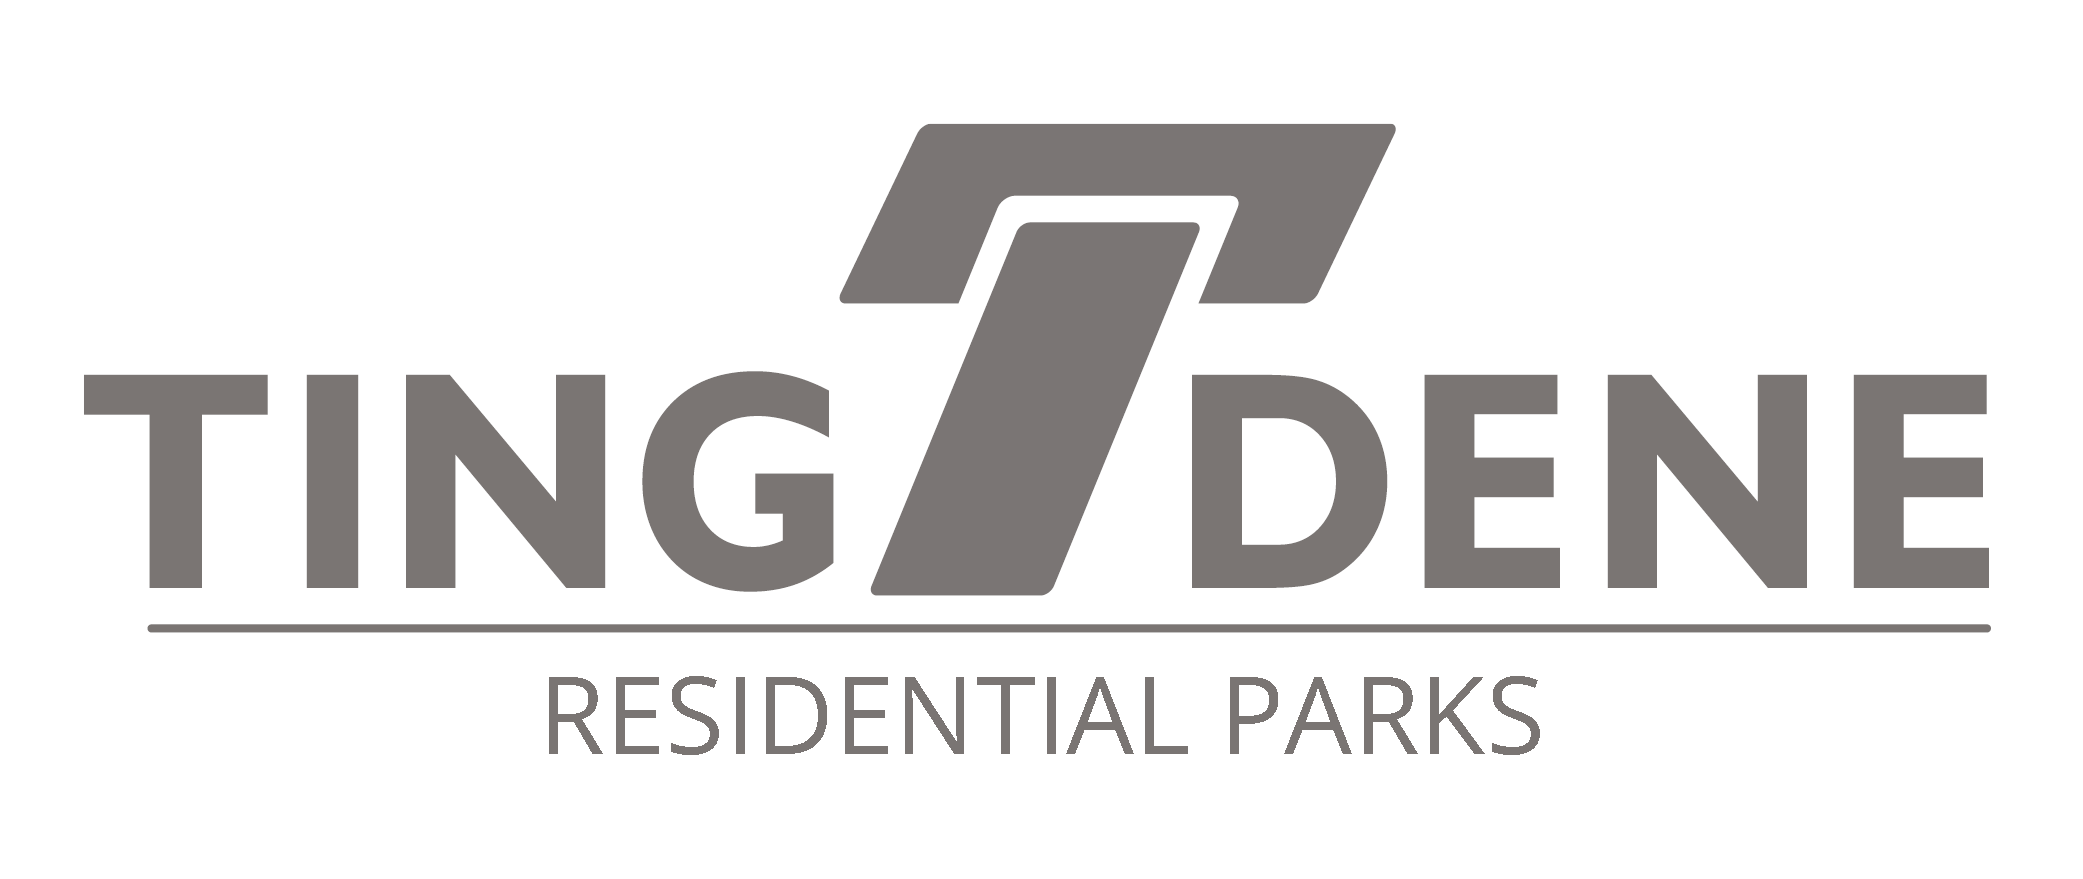 Tingdene Parks Limited